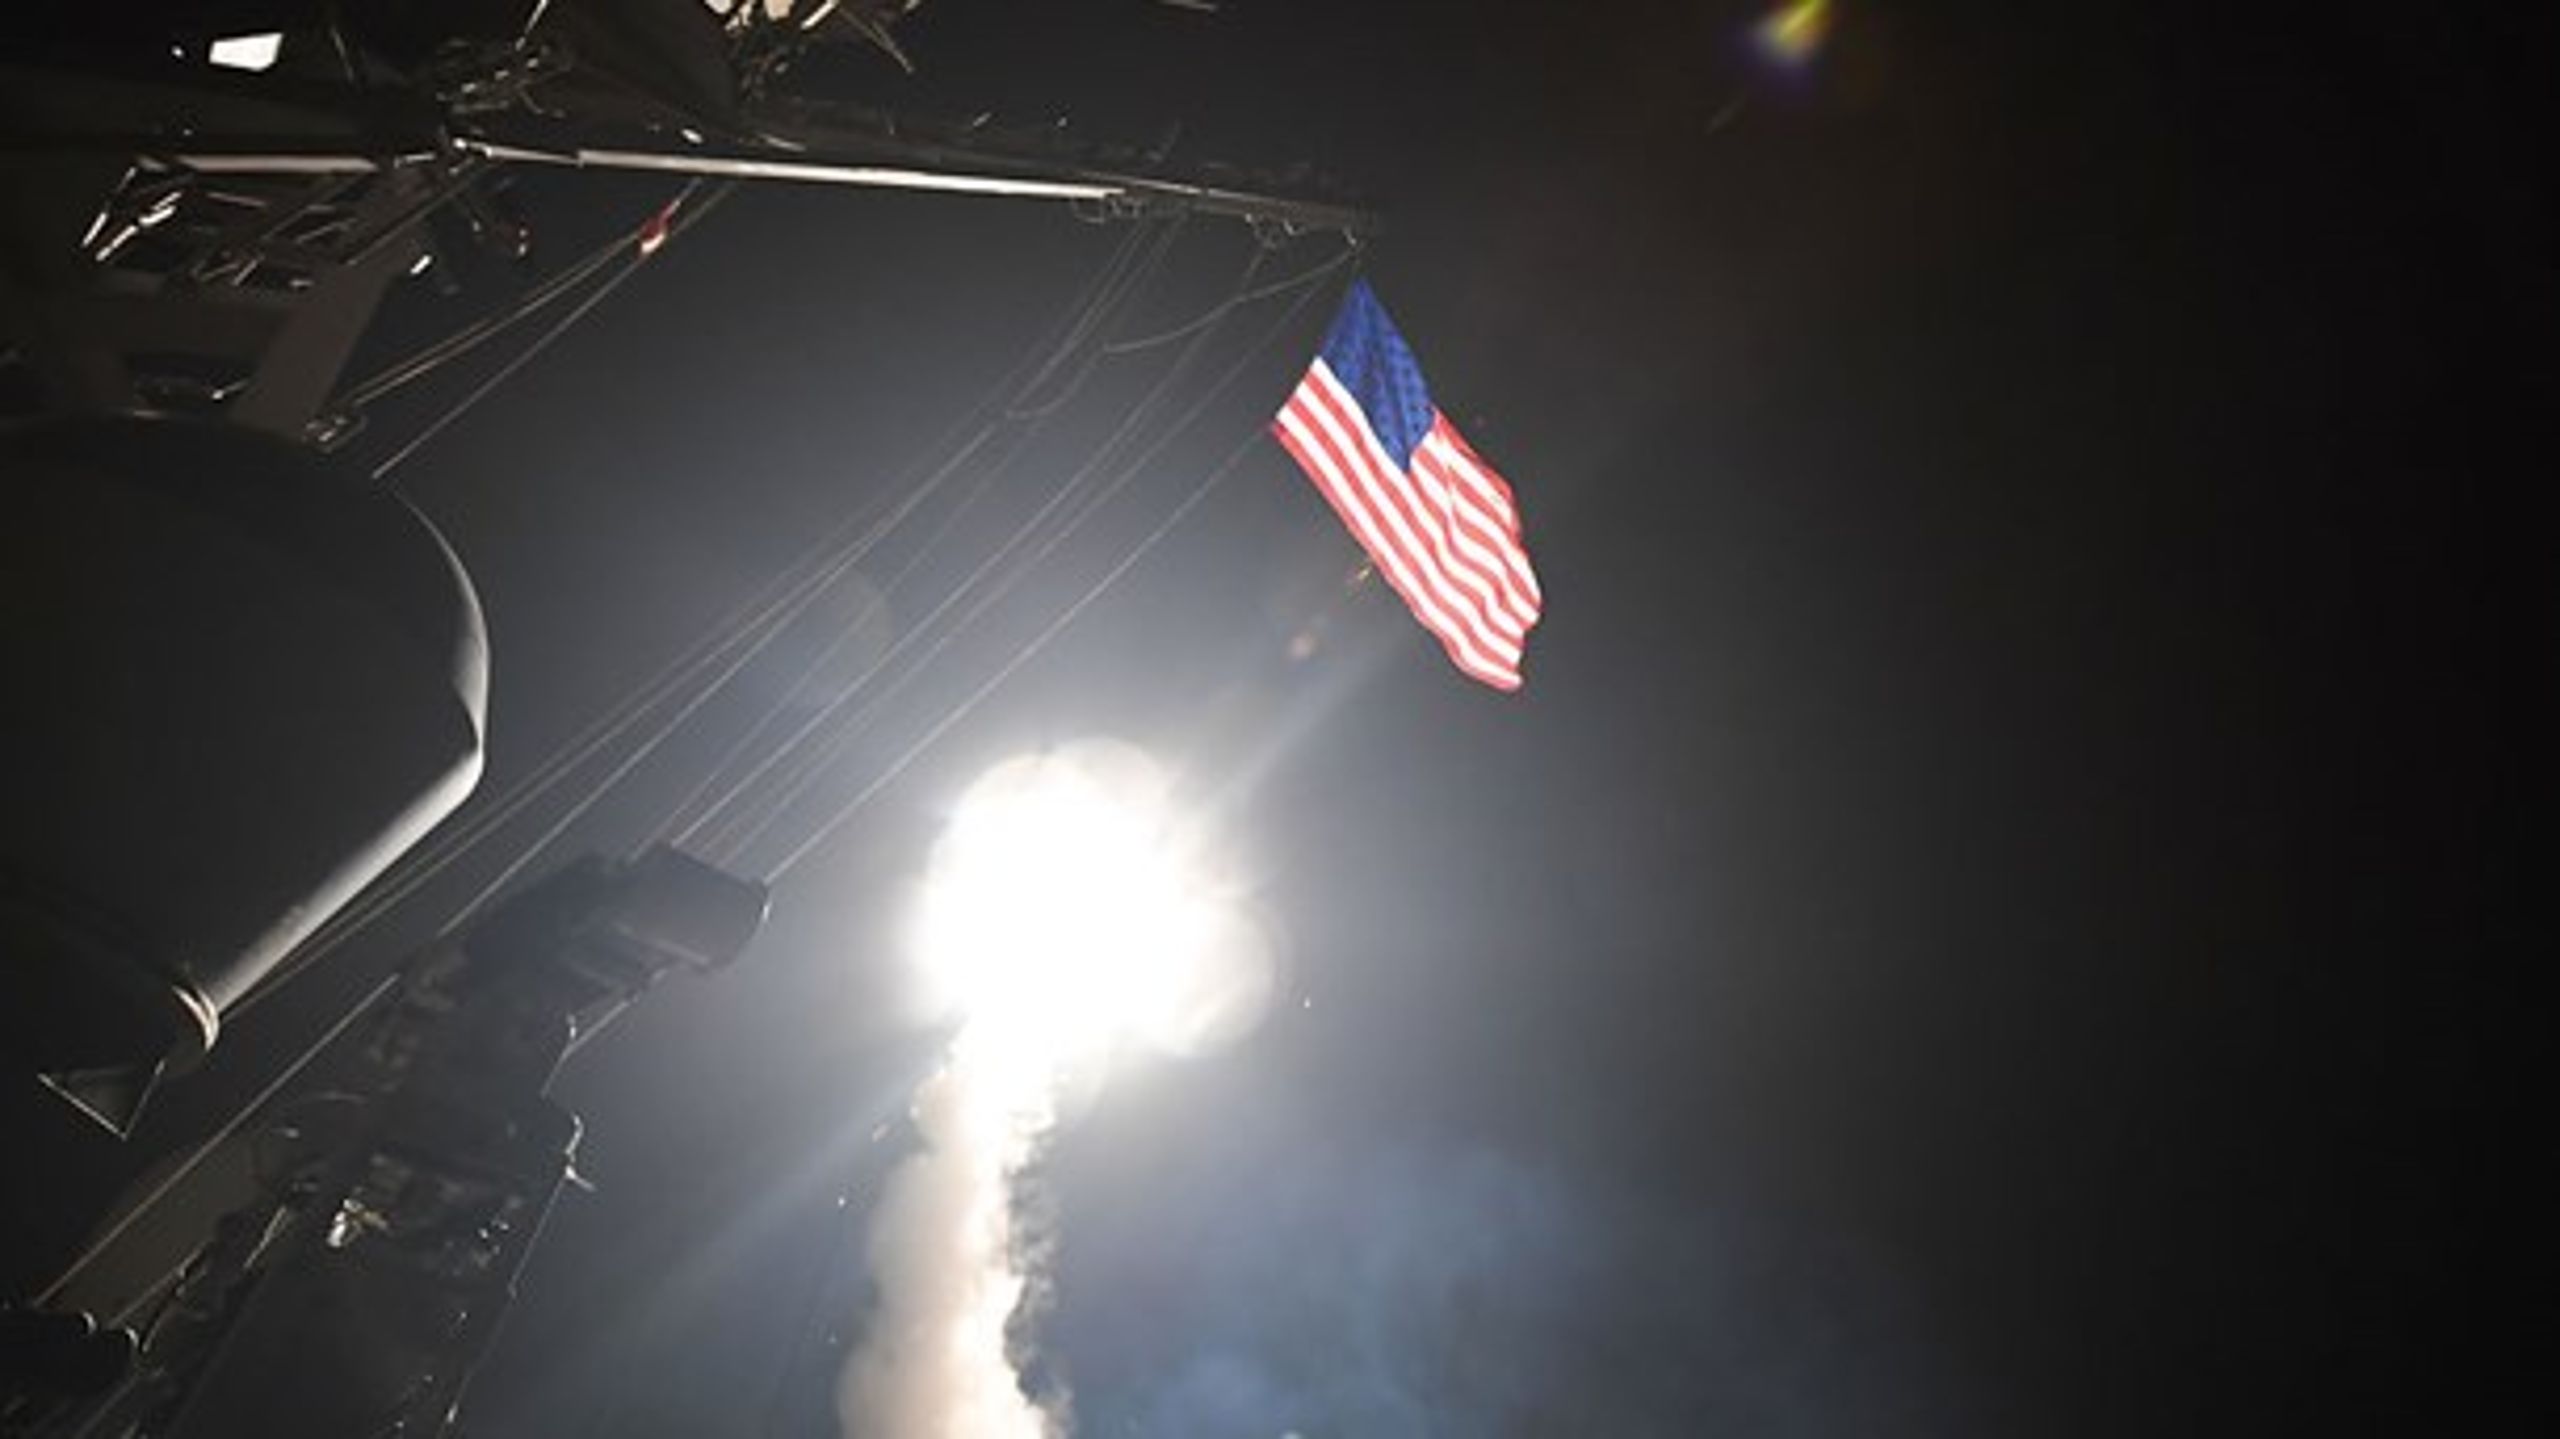 Natten til fredag affyrede USA missiler mod militære mål i Syrien. Angrebet var en reaktion på Assad-regimets formodede gasangreb mod civilie (Ford Williams/ Scanpix).